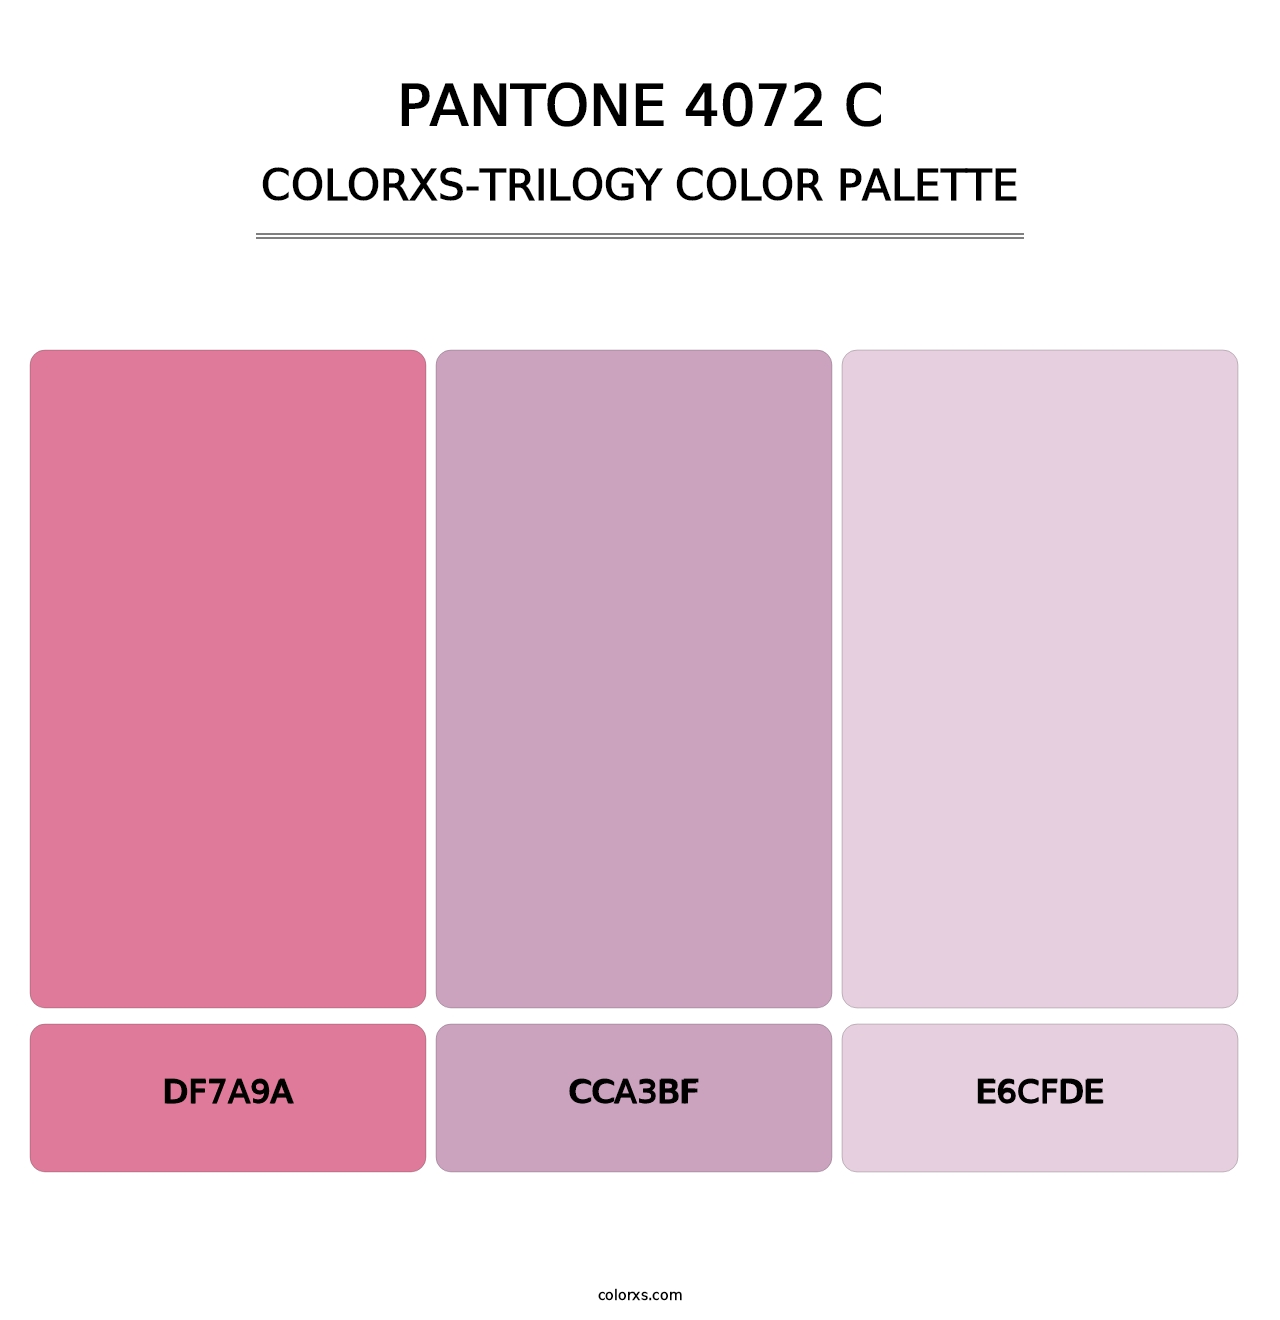 PANTONE 4072 C - Colorxs Trilogy Palette